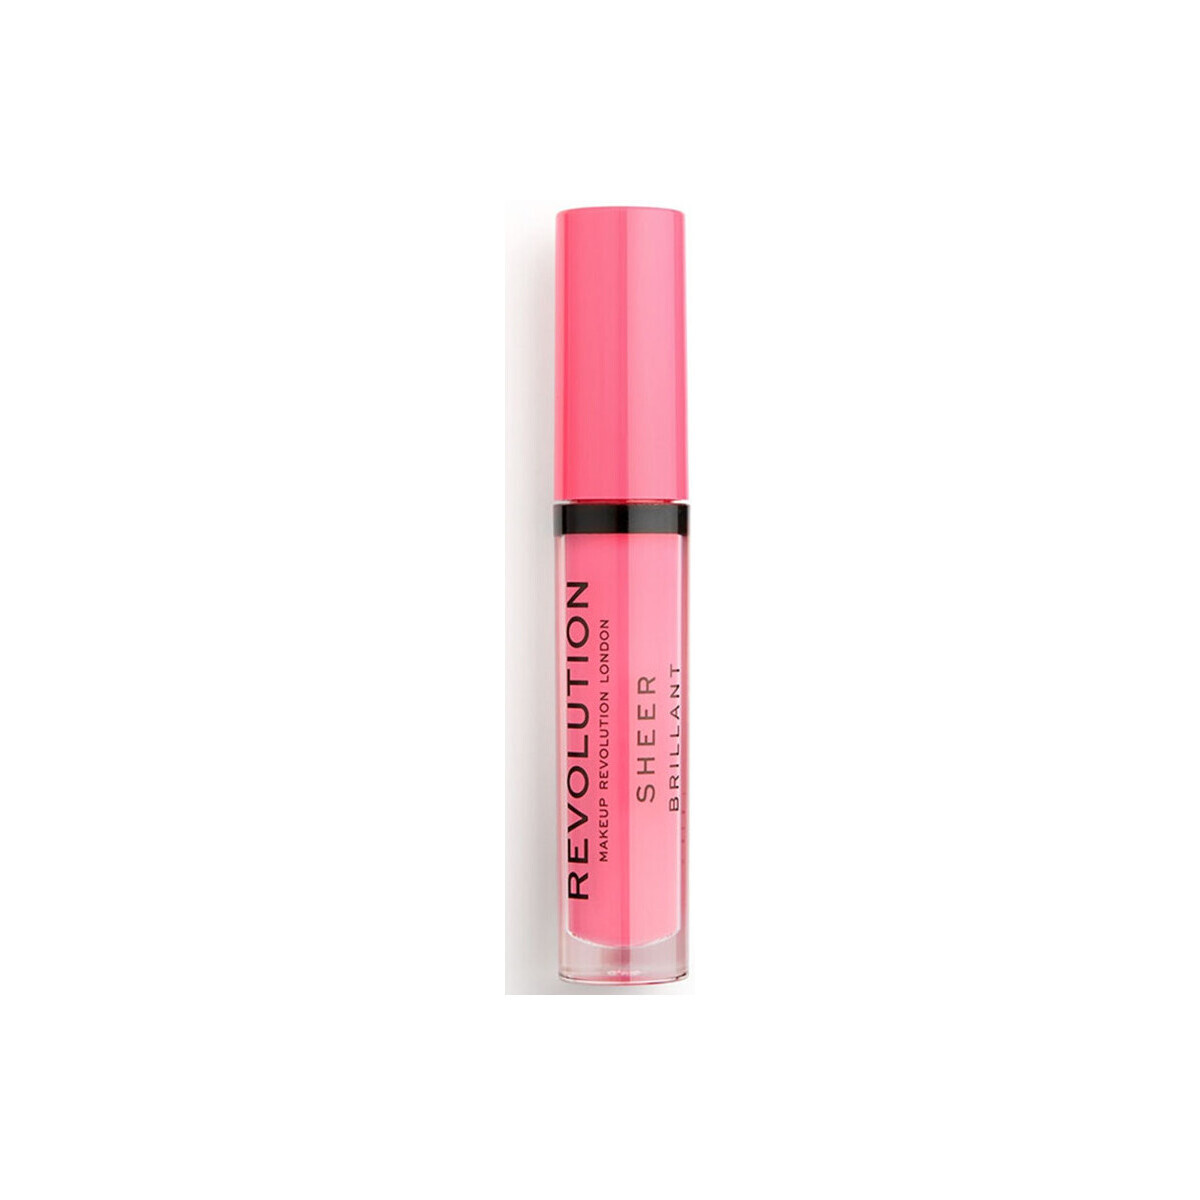 Beauty Damen Gloss Makeup Revolution Transparenter Glanz Lipgloss Rosa